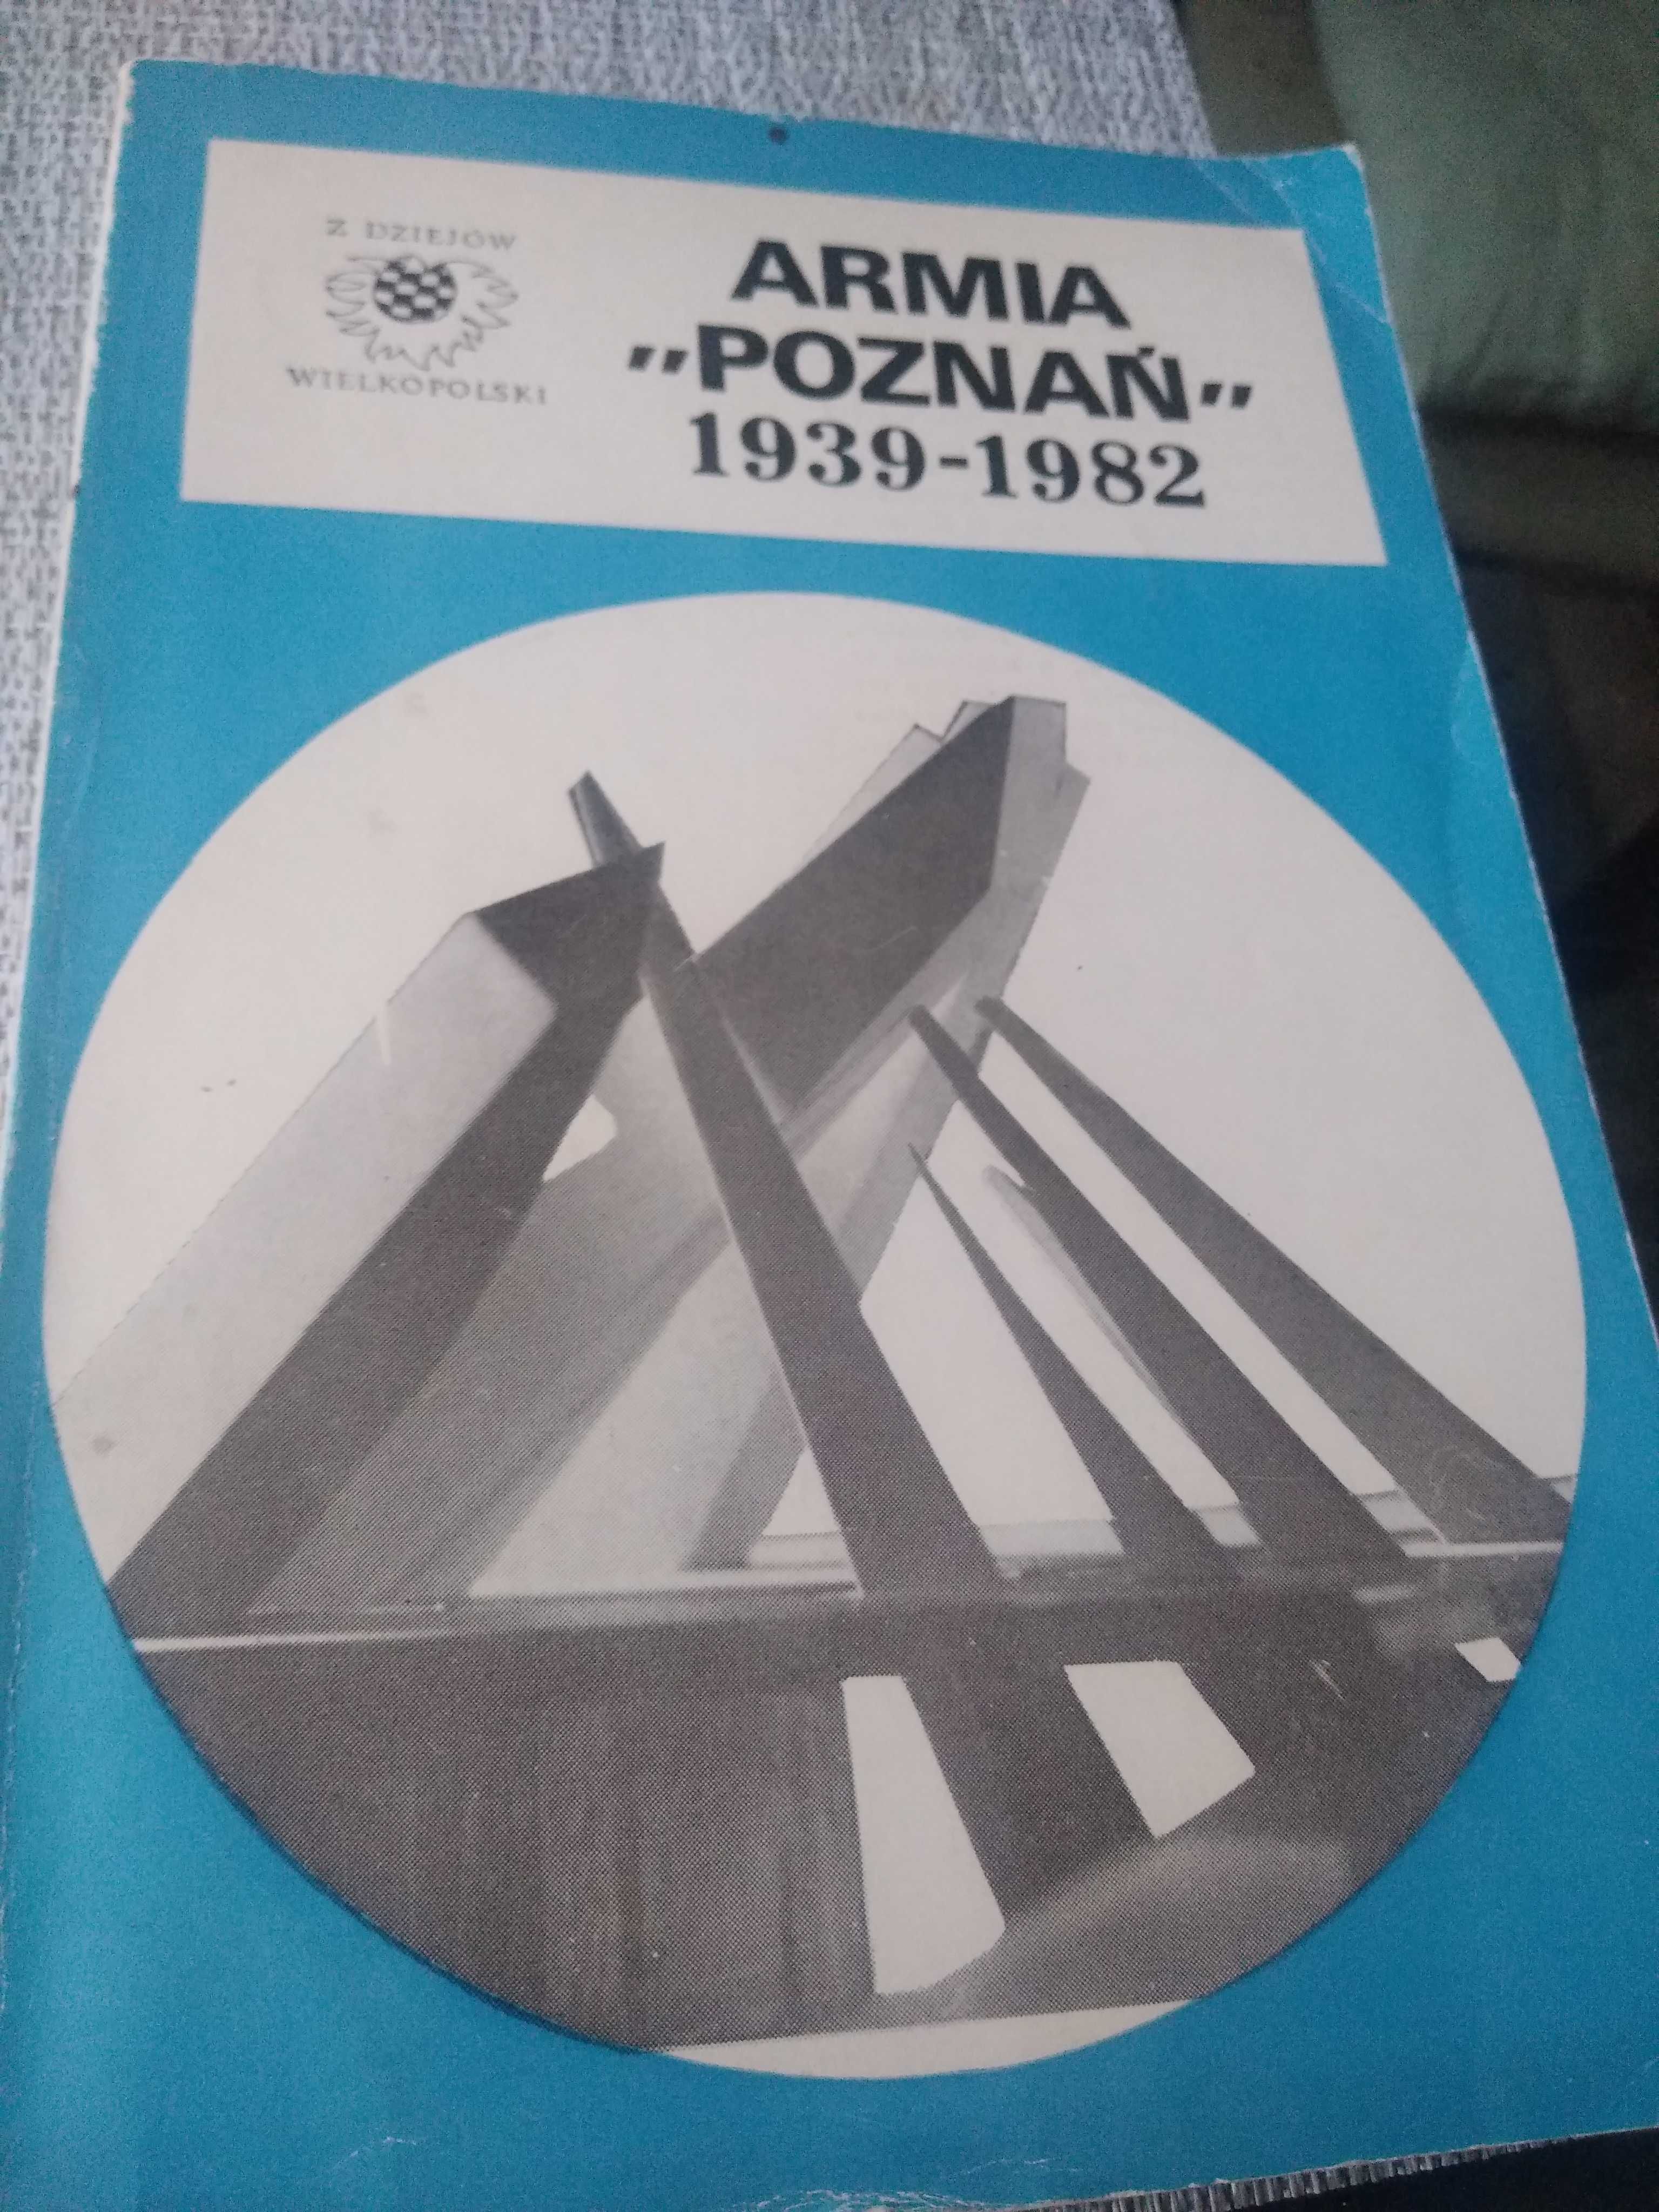 Zawadzki,Polak,knoll armia Poznań